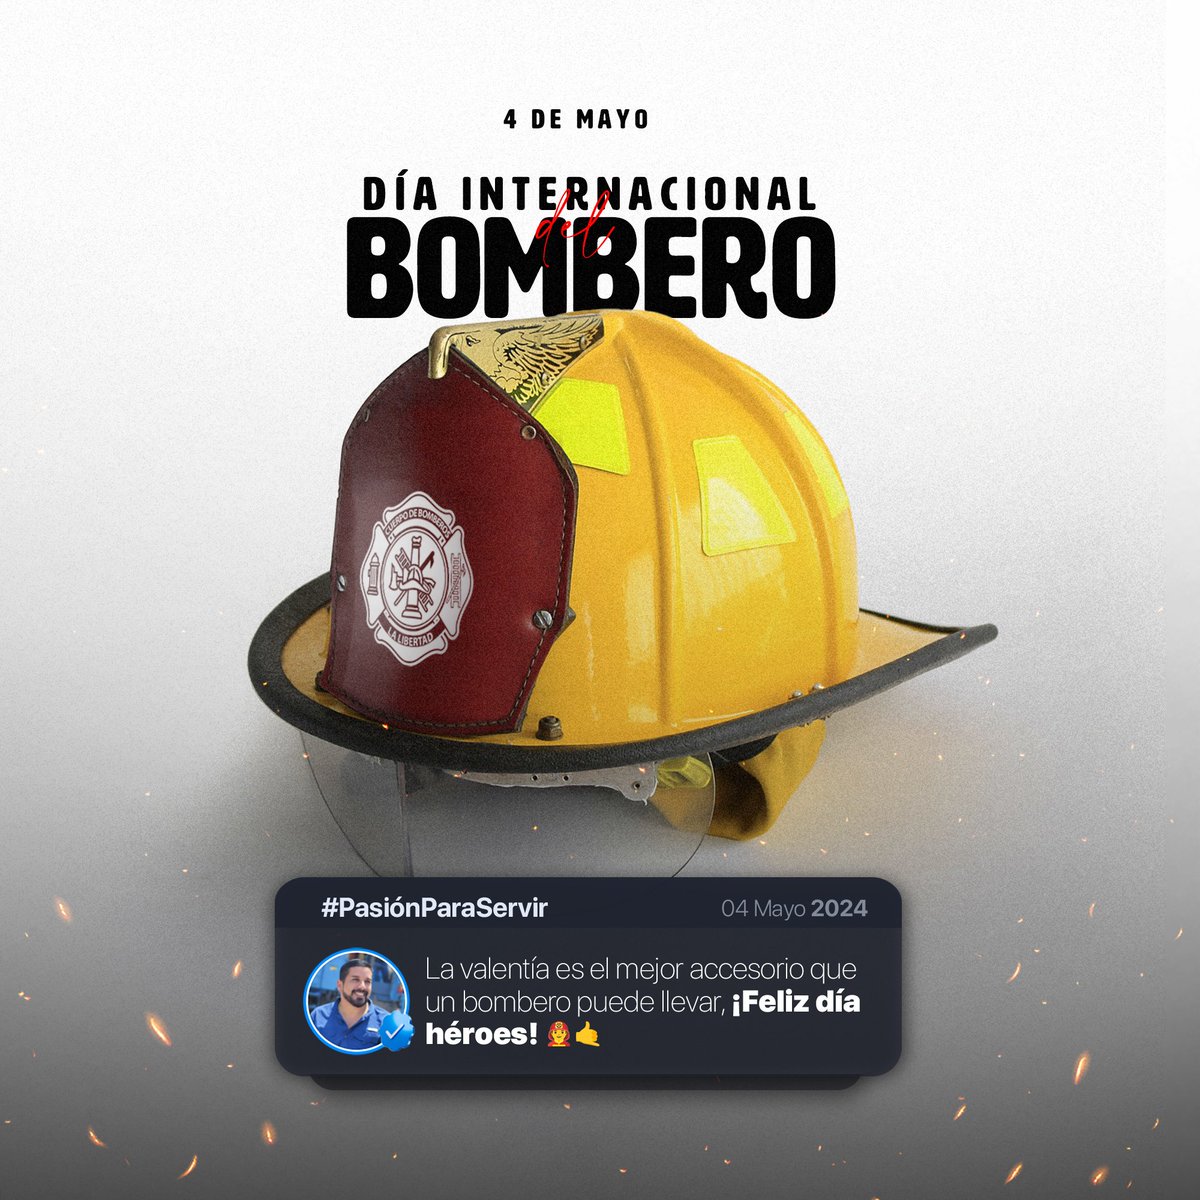 La valentía es el mejor accesorio que un bombero puede llevar. ¡Feliz día héroes! 👨‍🚒🤙🏻

#DíaInternacionalDelBombero 🚒